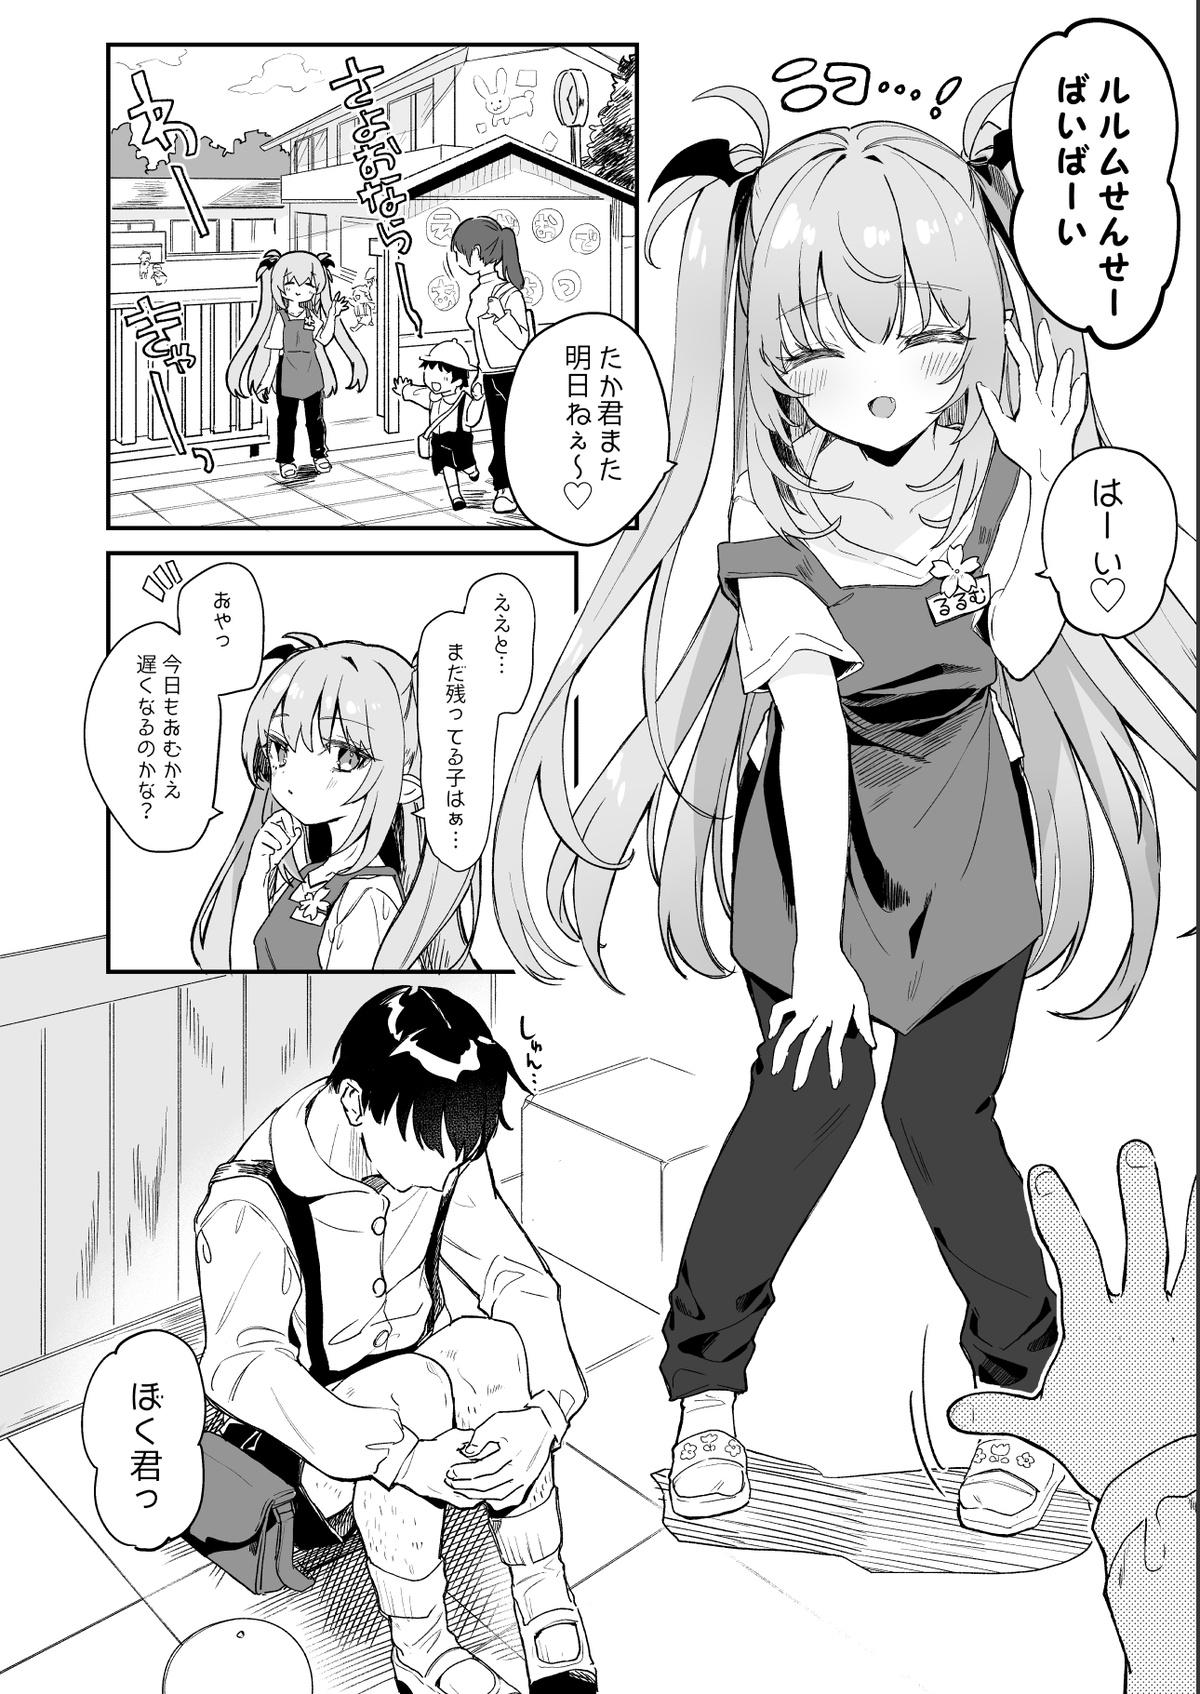 Gay Military [Tamano Kedama] Kodomo no Hi (Imishin) ni Mukete Manga o Kaku - Original Foursome - Page 2